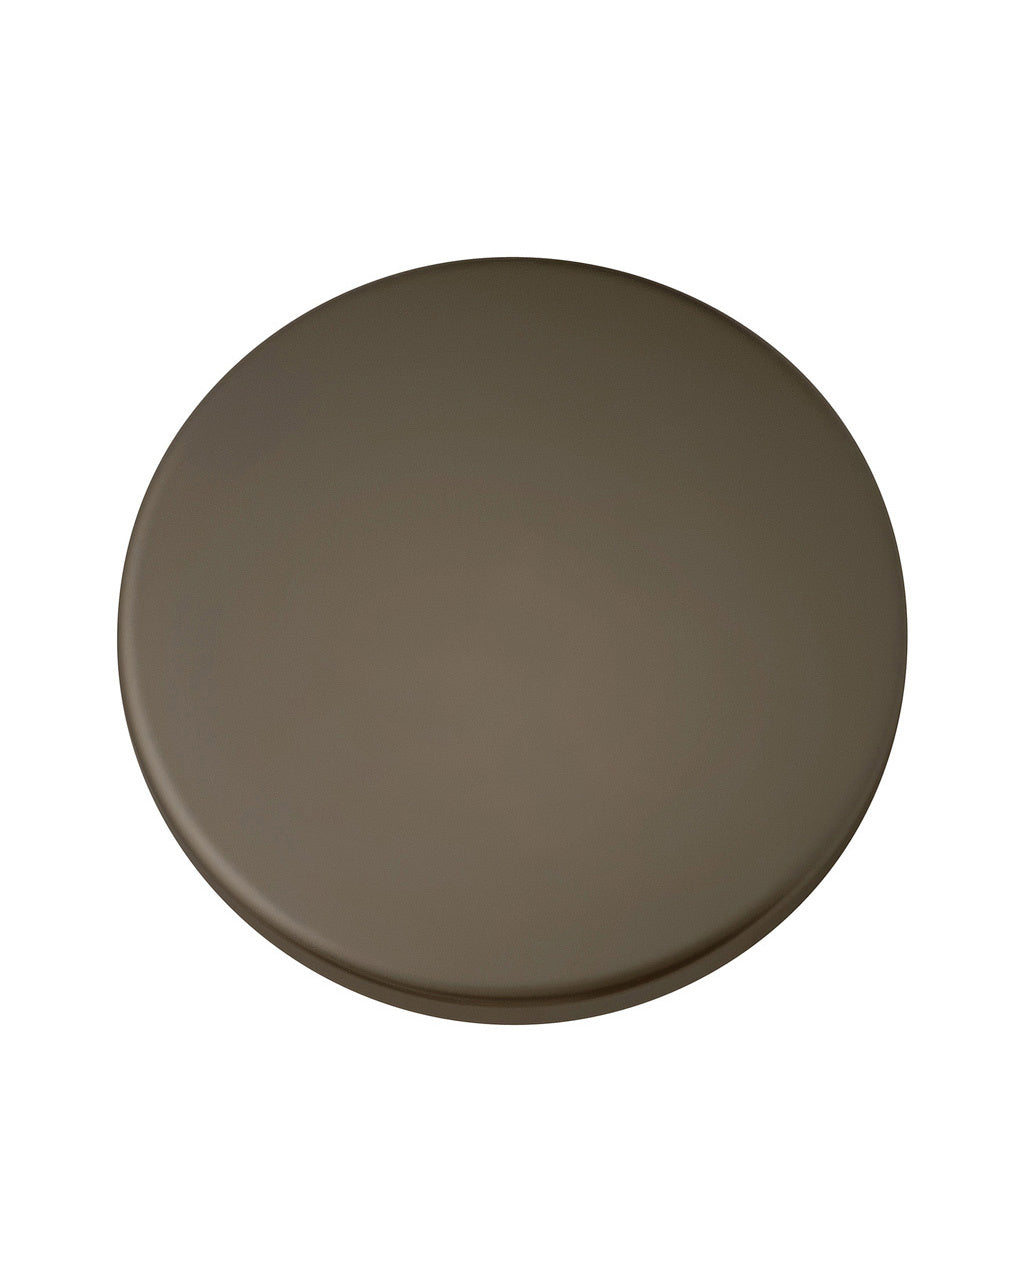 Hinkley - 932020FMM - Light Kit Cover - Light Kit Cover - Metallic Matte Bronze